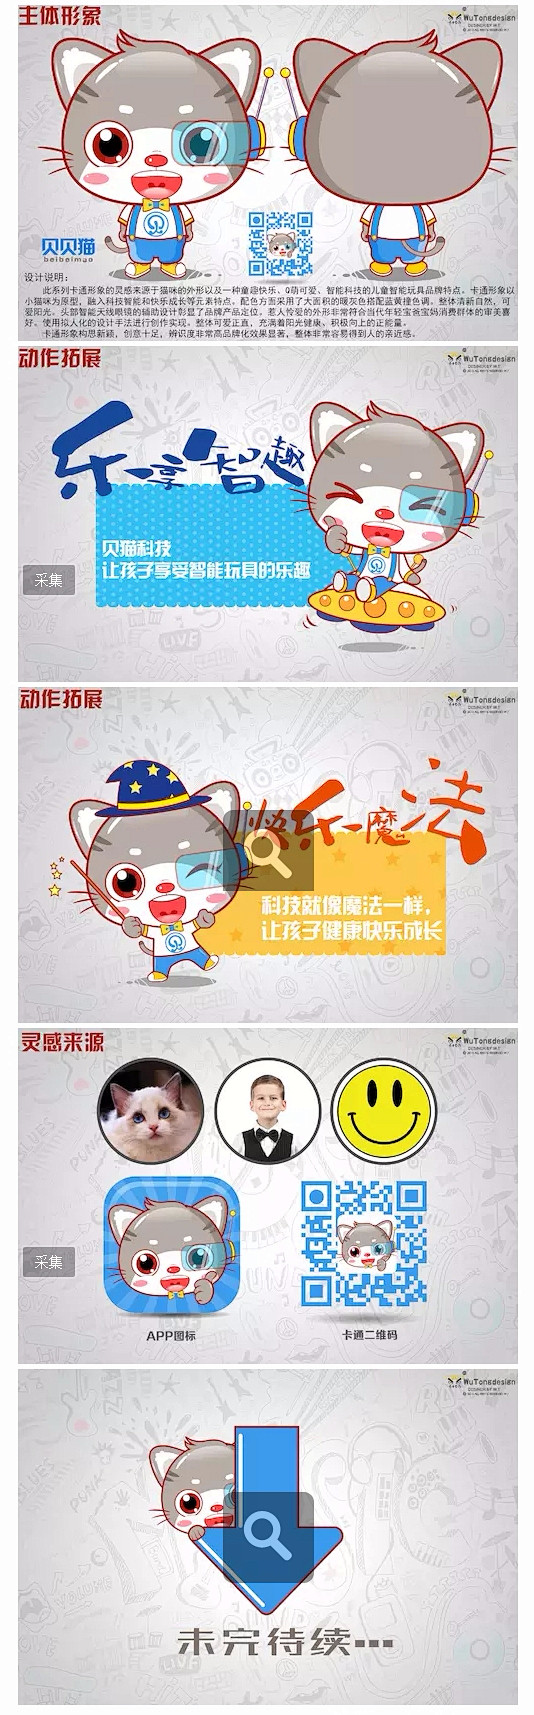 深圳市贝猫科技有限公司卡通形象设计-卡通...